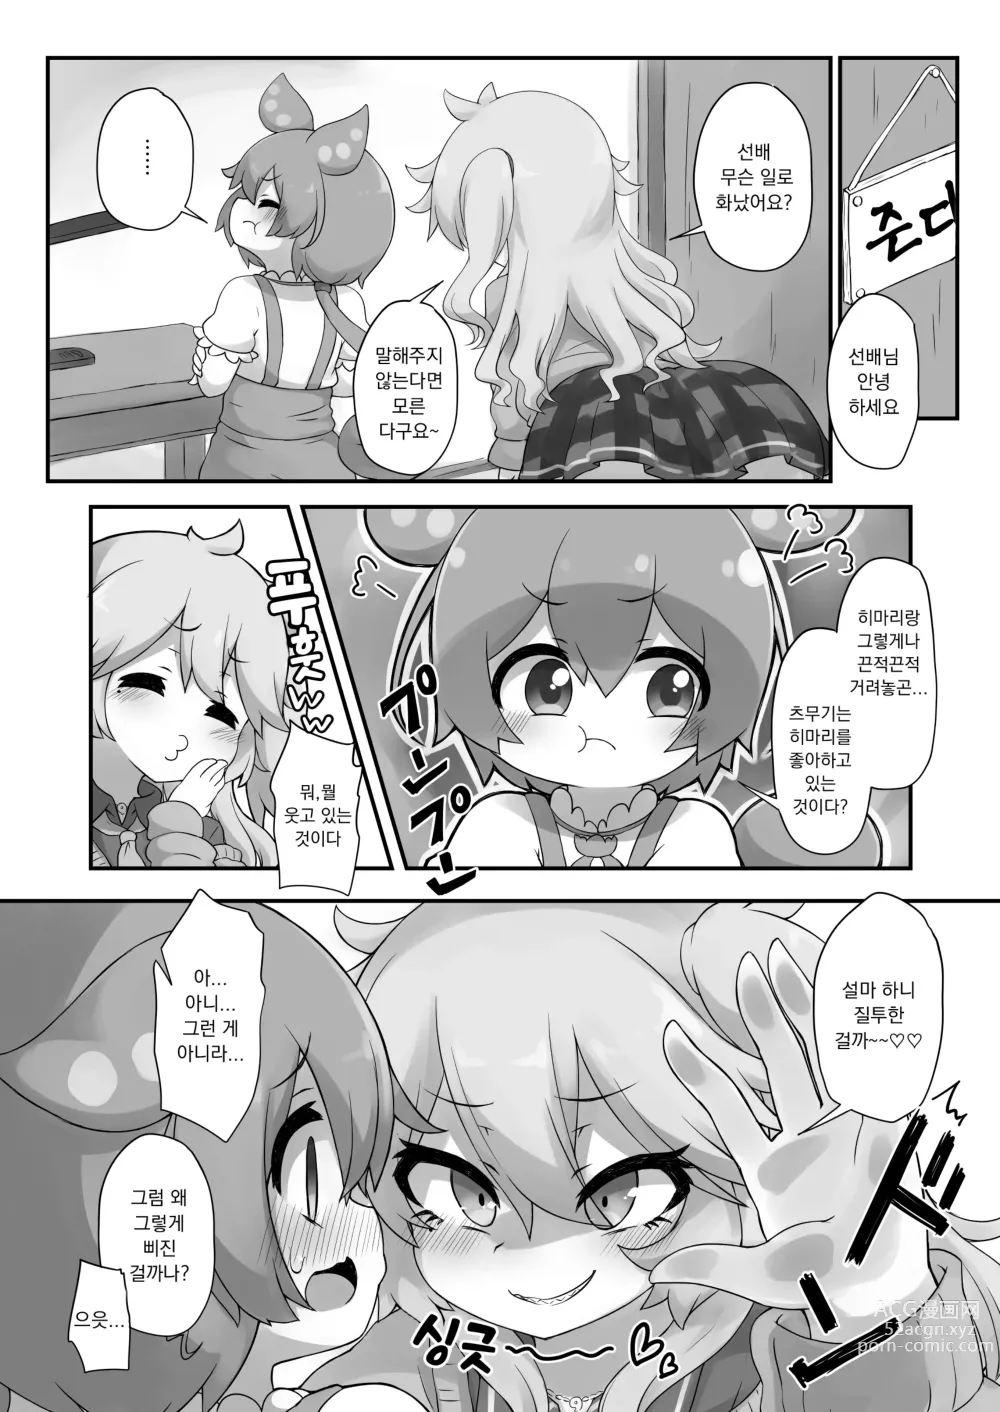 Page 4 of doujinshi 뭔가 생겨난 것이다!?